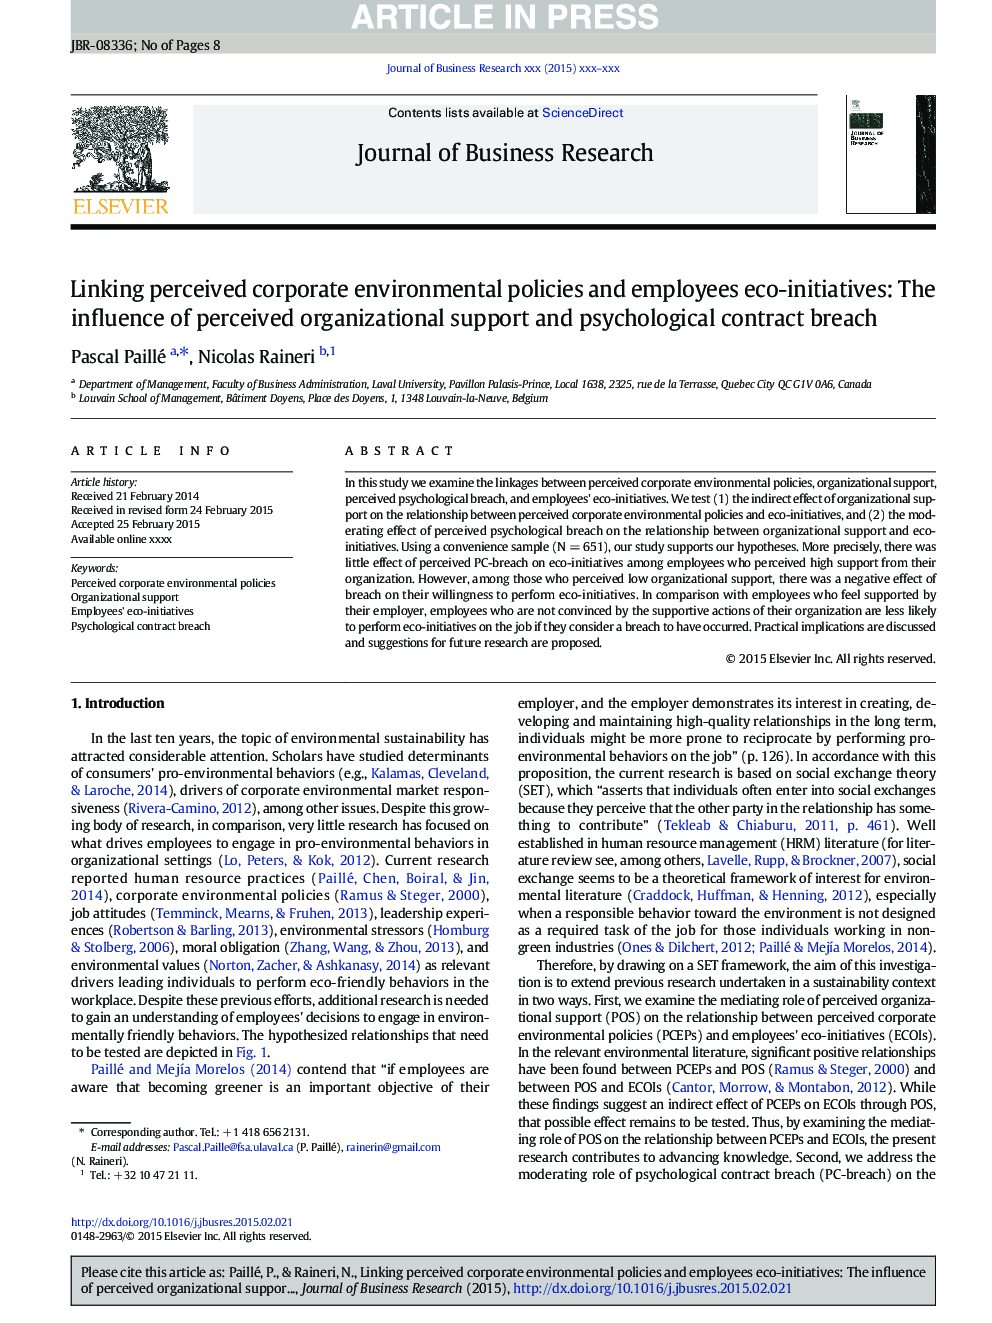 پیوند دادن سیاست های محیطی شرکتی درک شده و کارکنان محیط زیست: تأثیر پشتیبانی سازمانی درک شده و نقض قرارداد روان شناختی 